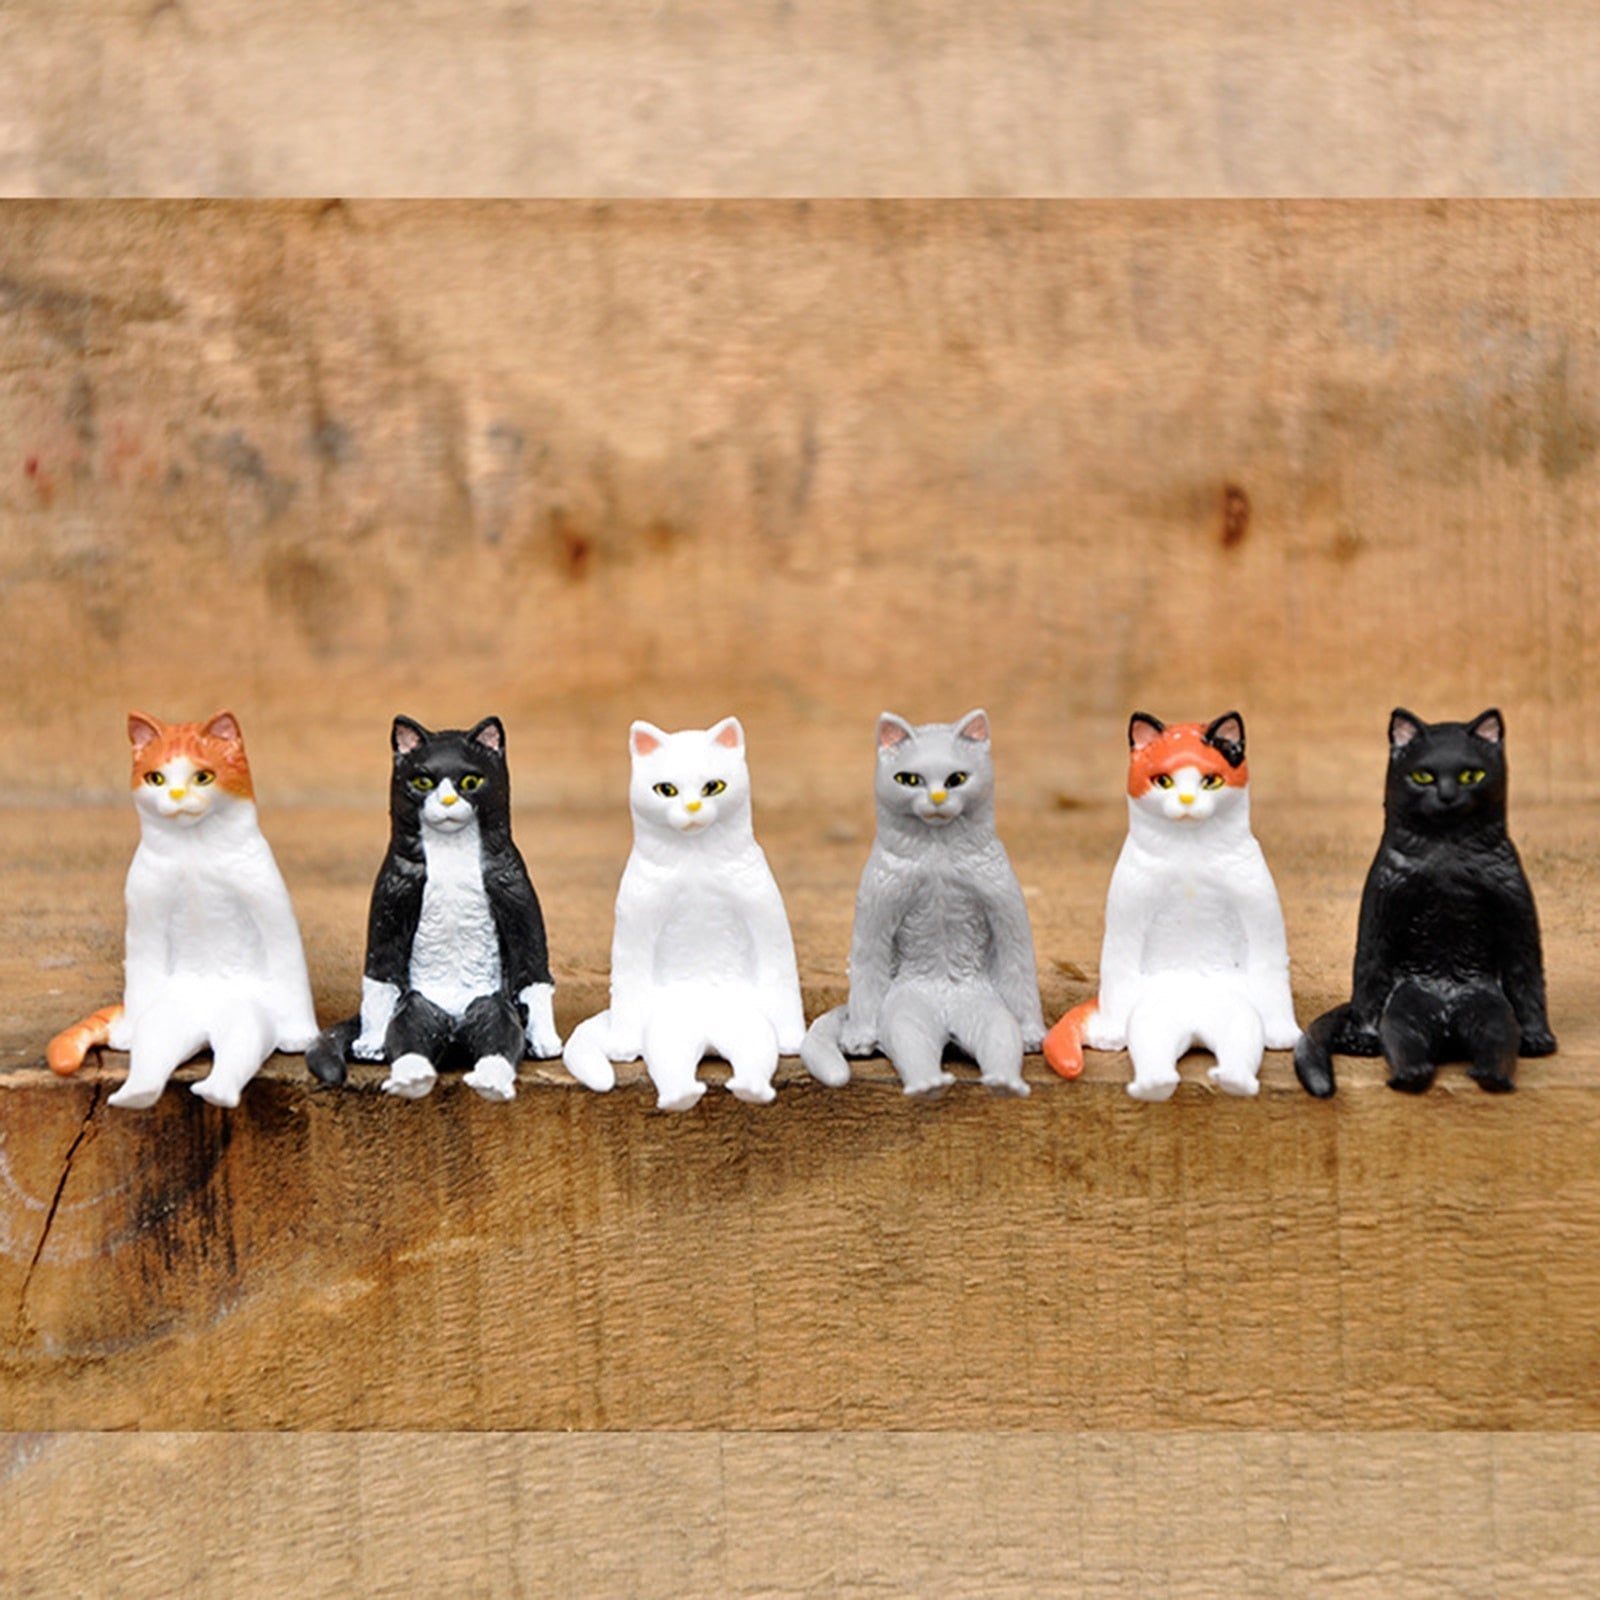 Cat Figurines Toys